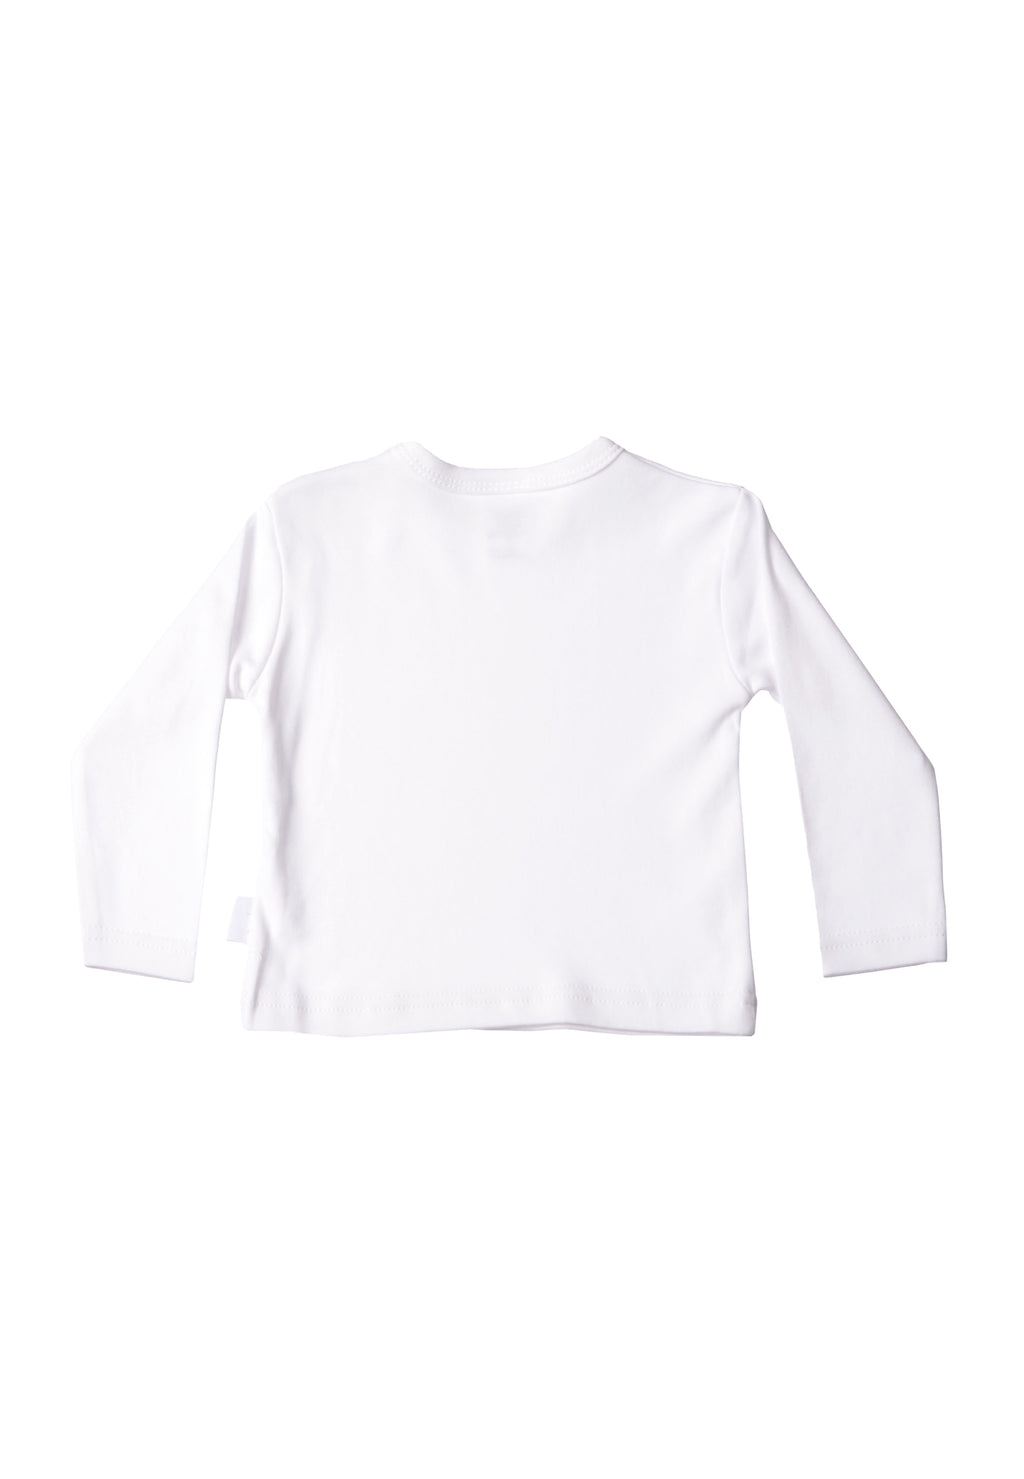 Langarmshirt in weiß mit Boo Crew Print, der einen Kürbis und ein süßes Gespenst zeigt.